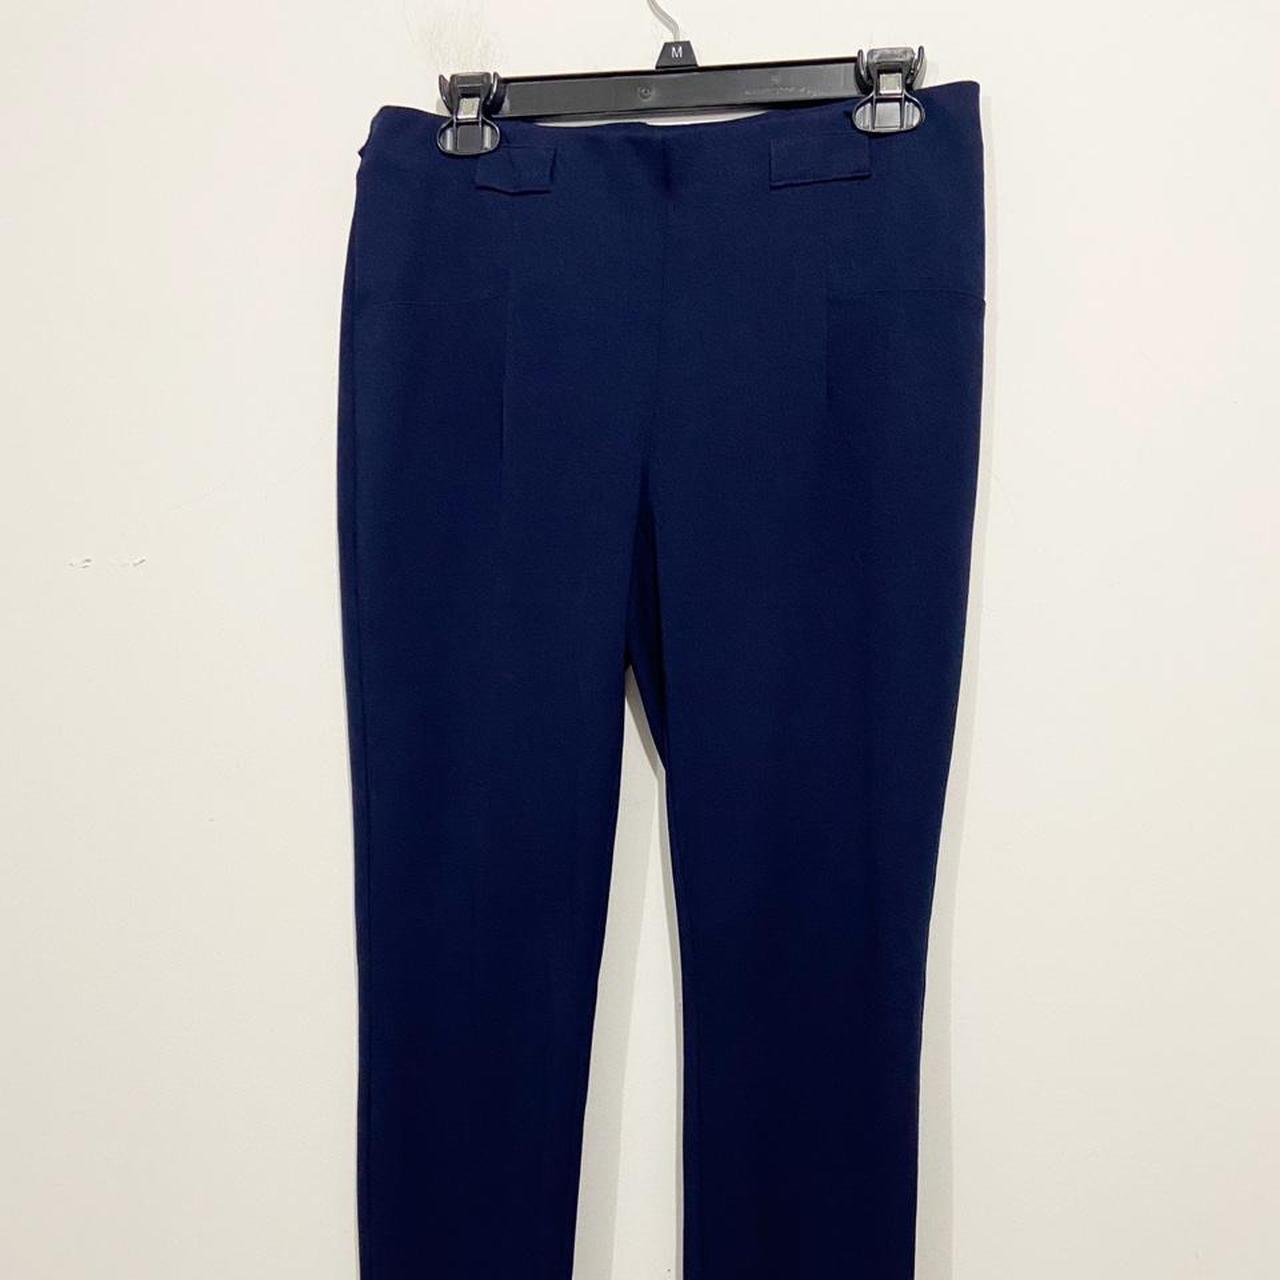 Women's Blue Trousers